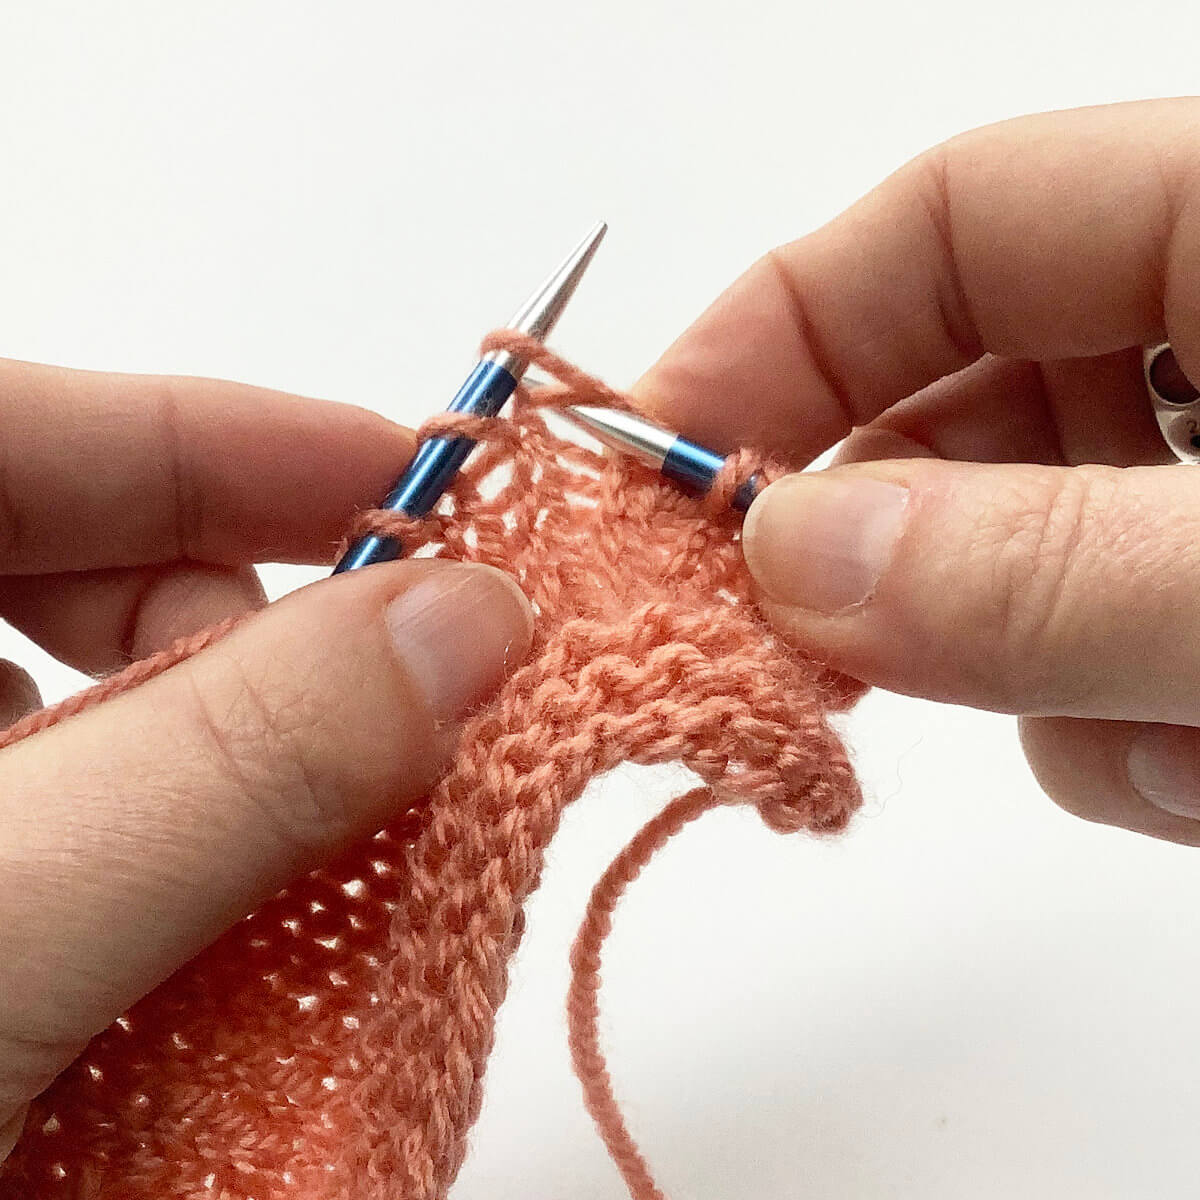 knit 1 below - step 3